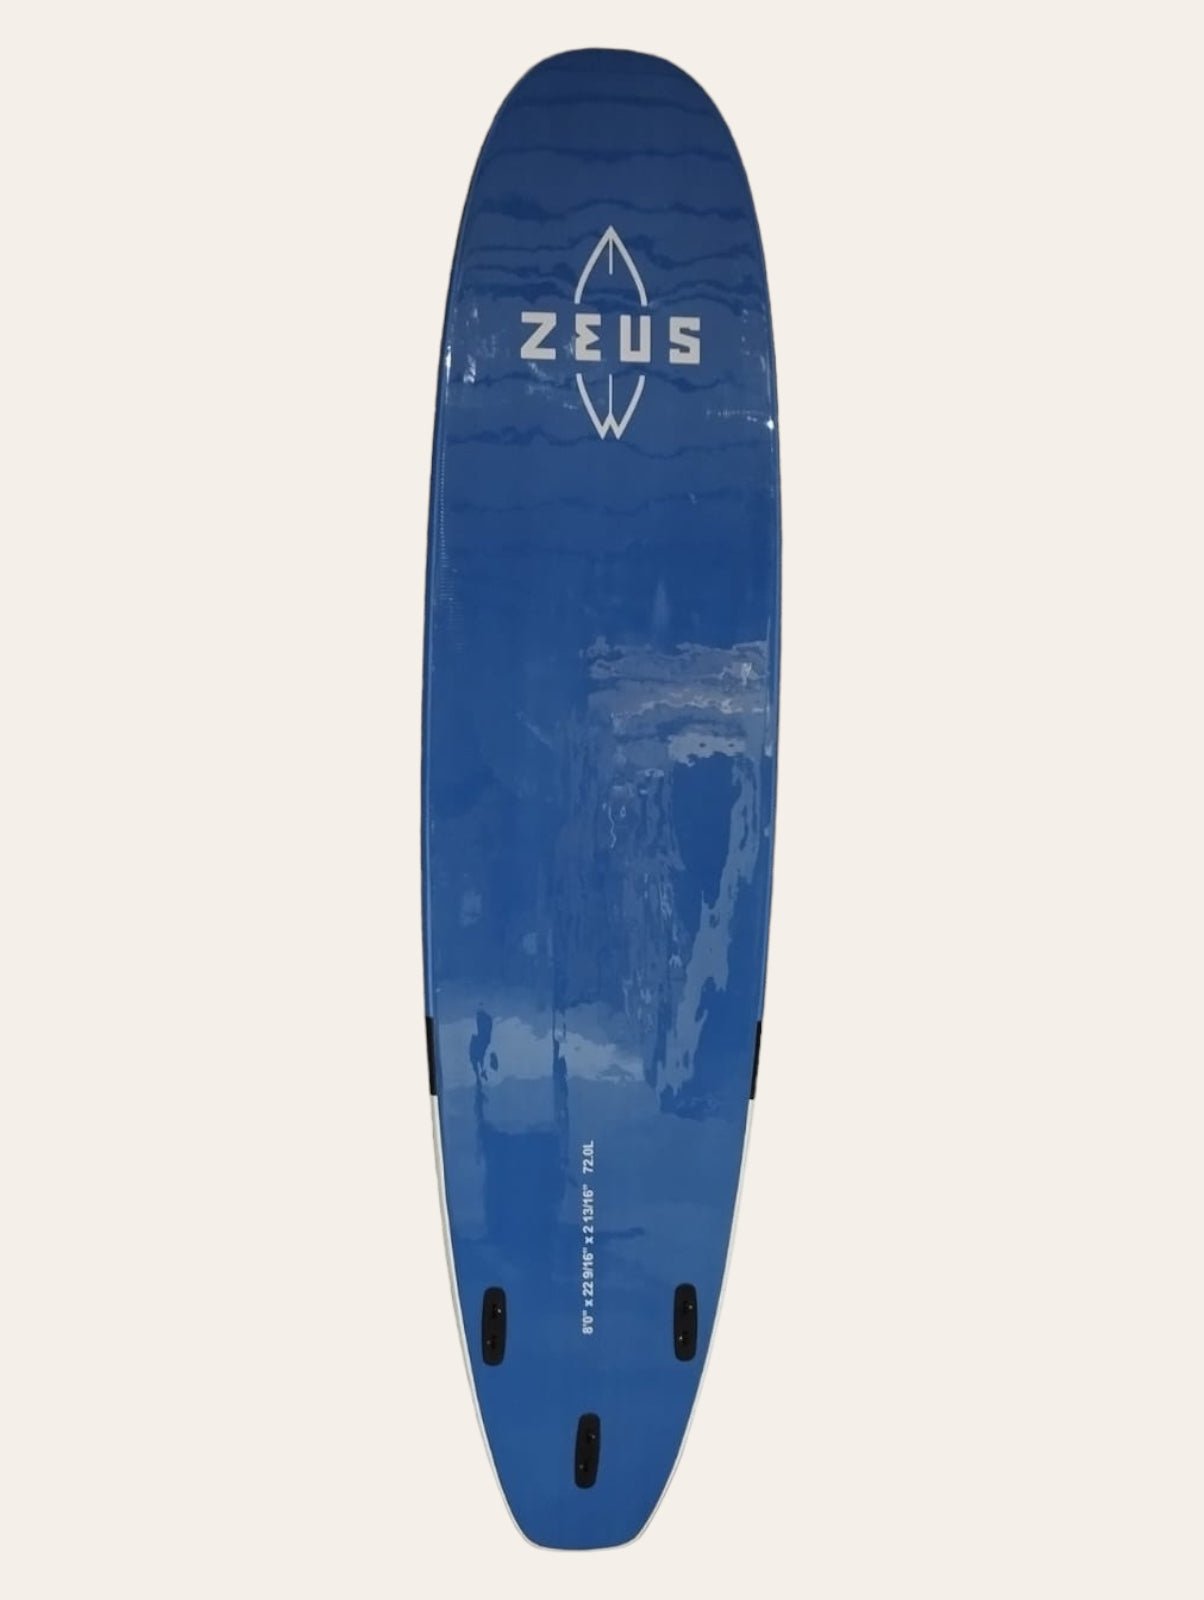 Planche de Surf Occasion Zeus Temper 8'0 EVAproduct_type#surf_#surfshop#_zeus-surfboards_